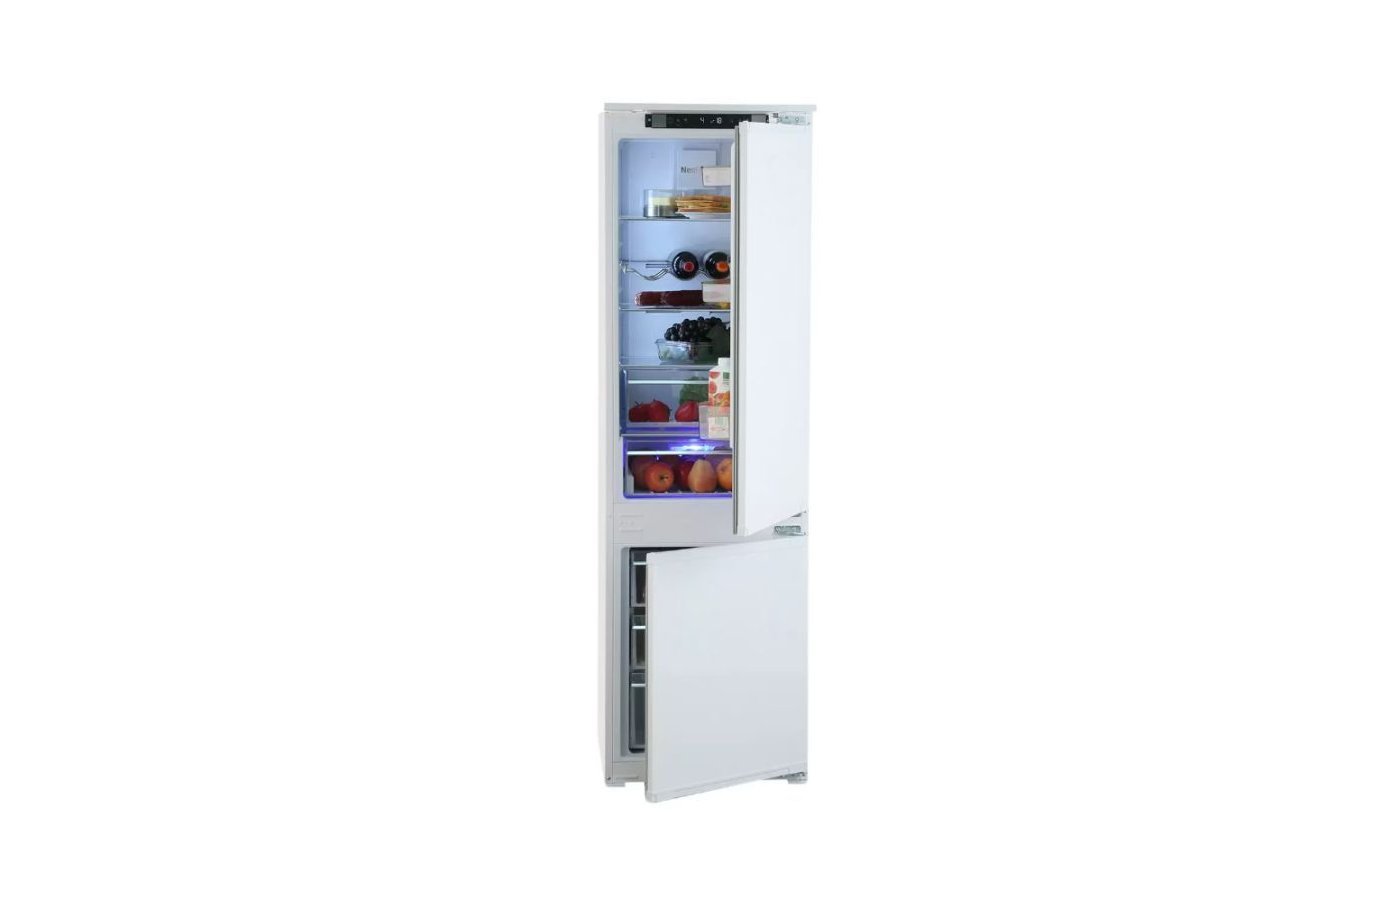 Beko bcna275e2s. Холодильник Beko bcna275e2s схема встраивания холодильника. БЕКО БЦНА 275 встроенный холодильник. Встраиваемый холодильник beko bcna275e2s